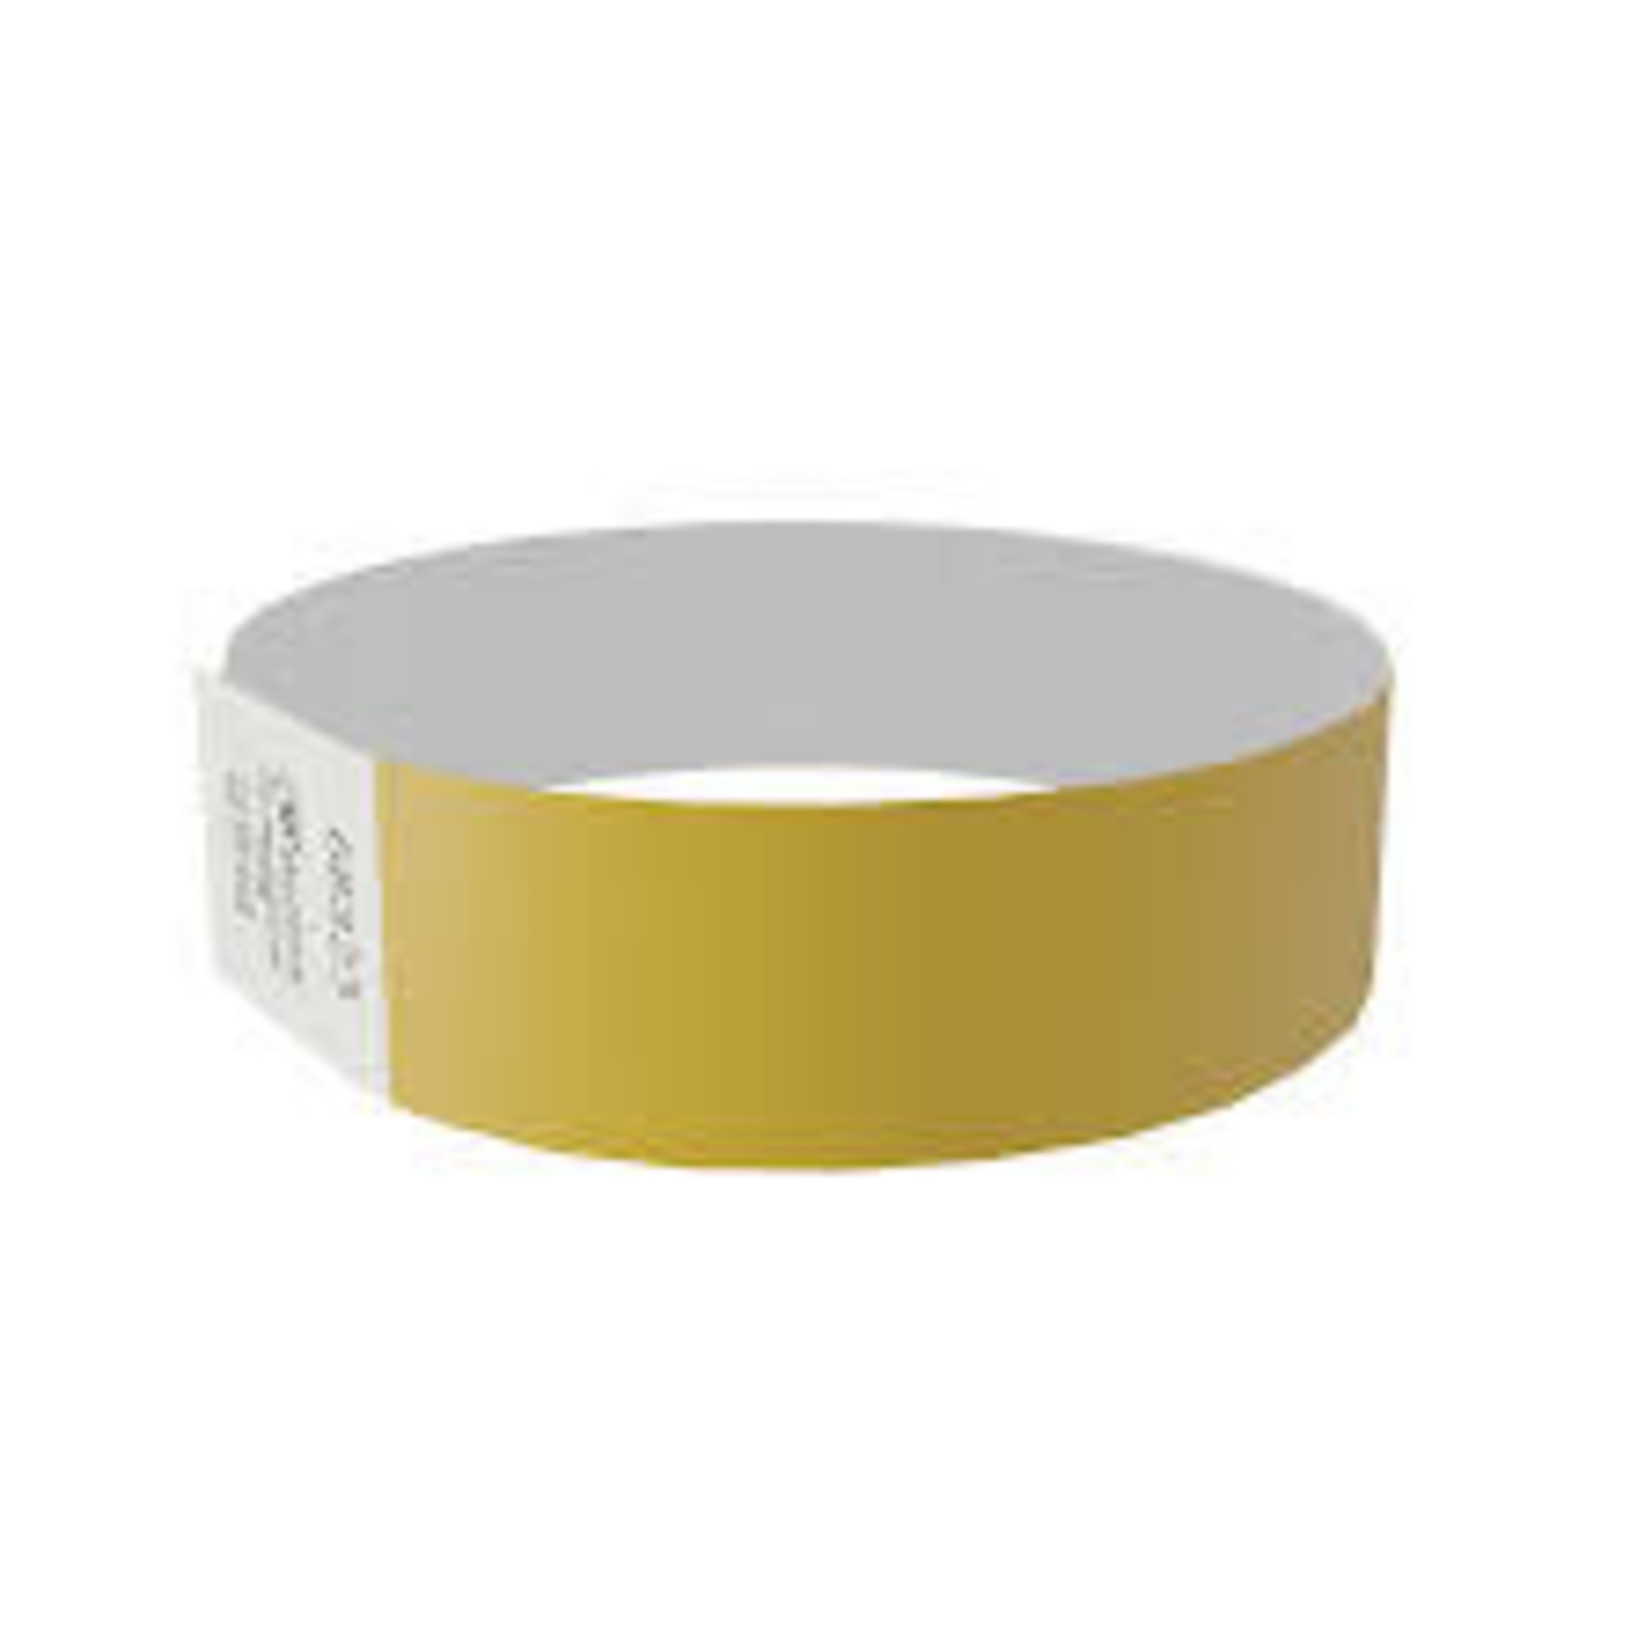 MedTech Wristbands Gold Supertek Adhesive Paper Wristbands - 100ct.